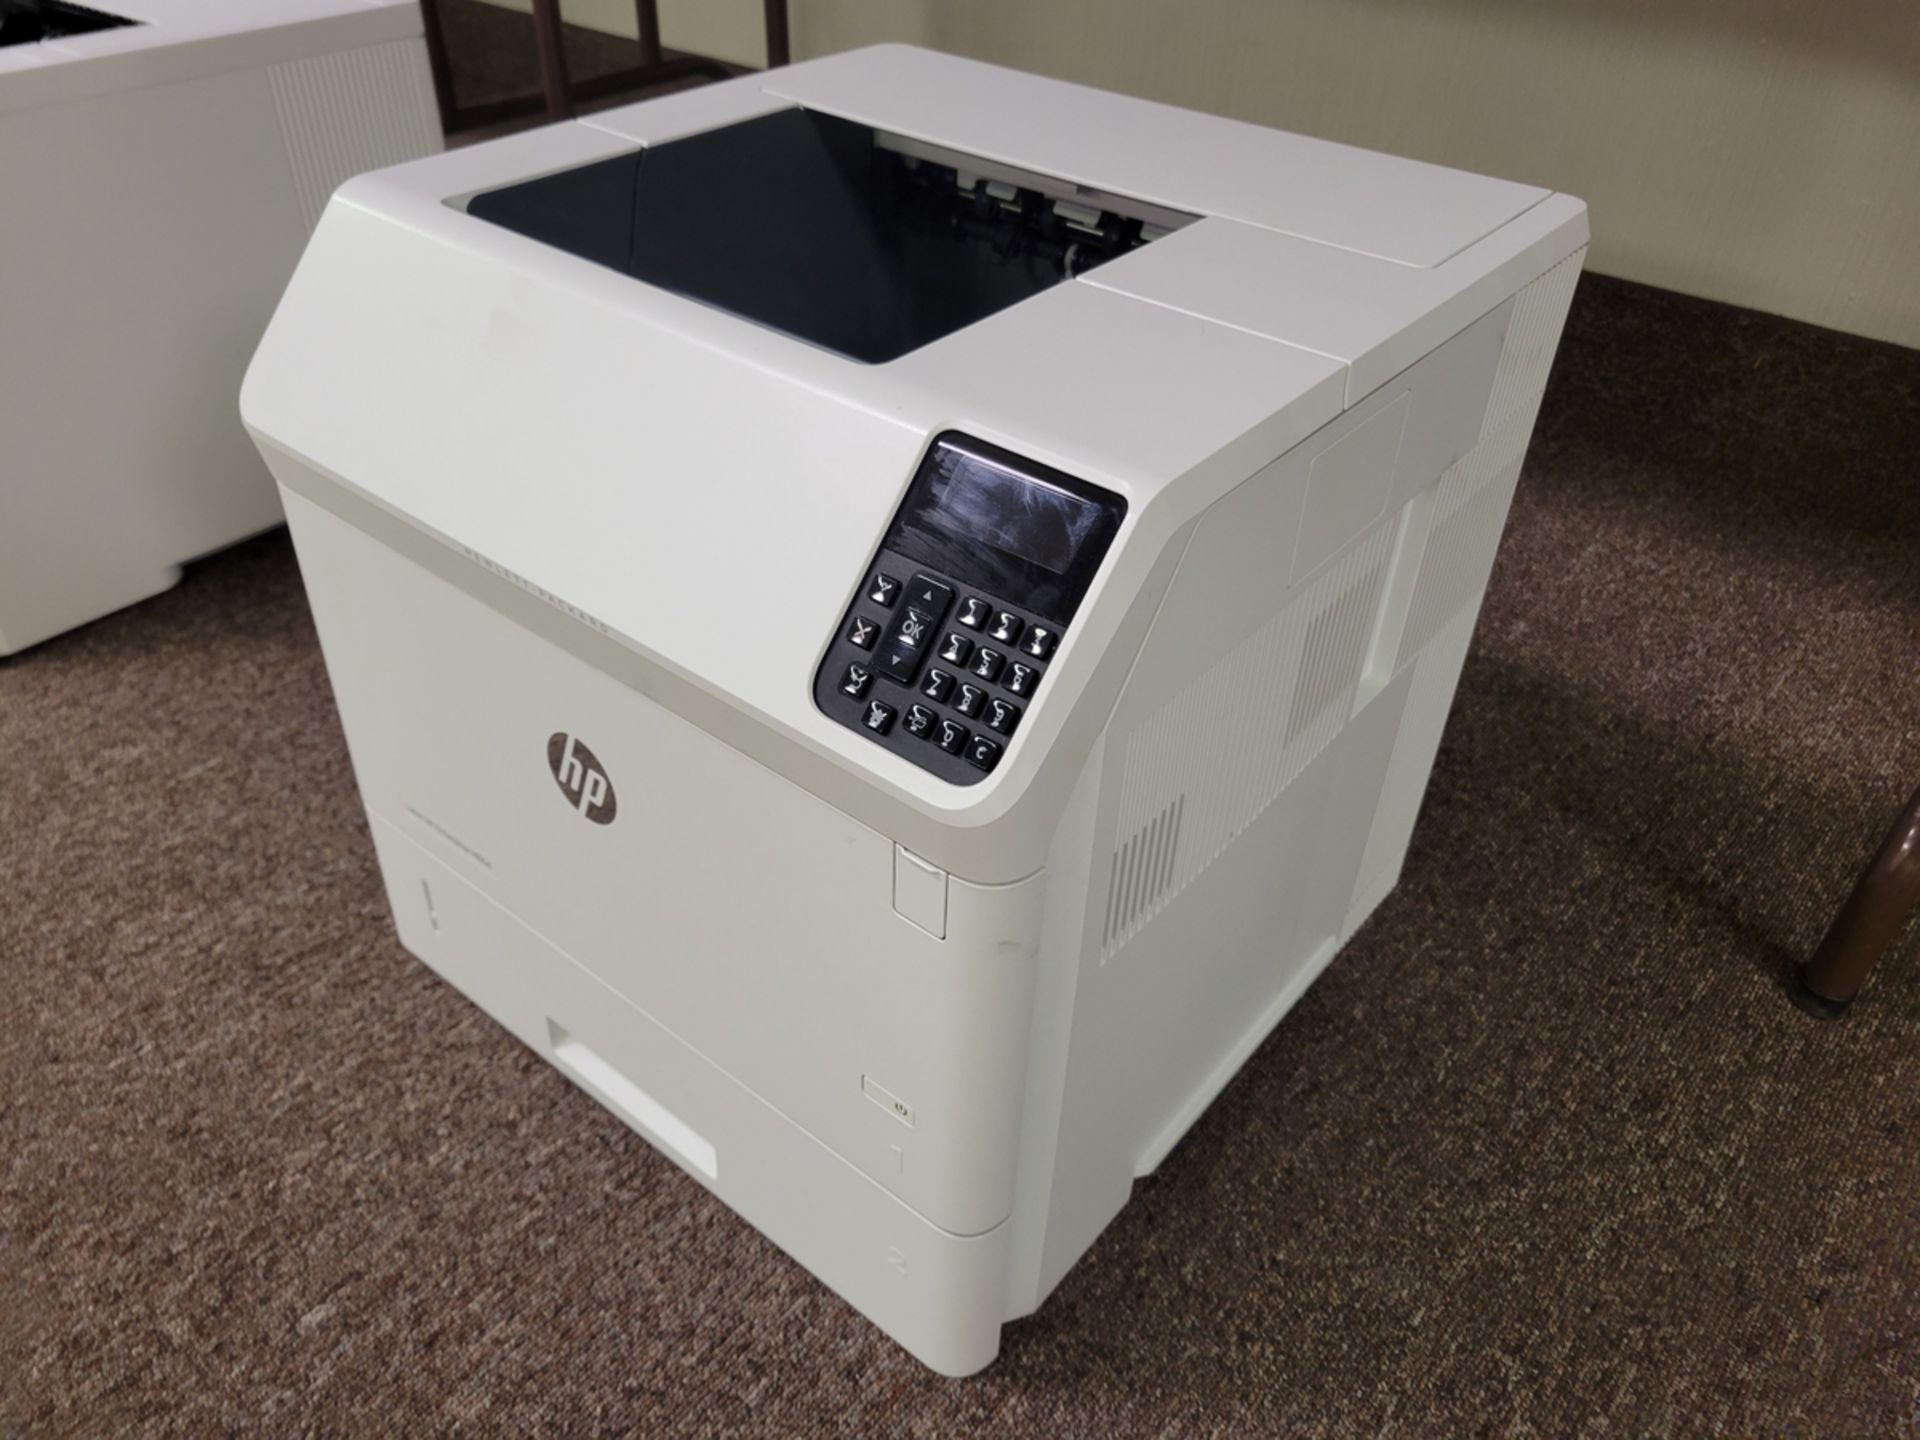 HP LaserJet Enterprise M604 Printer